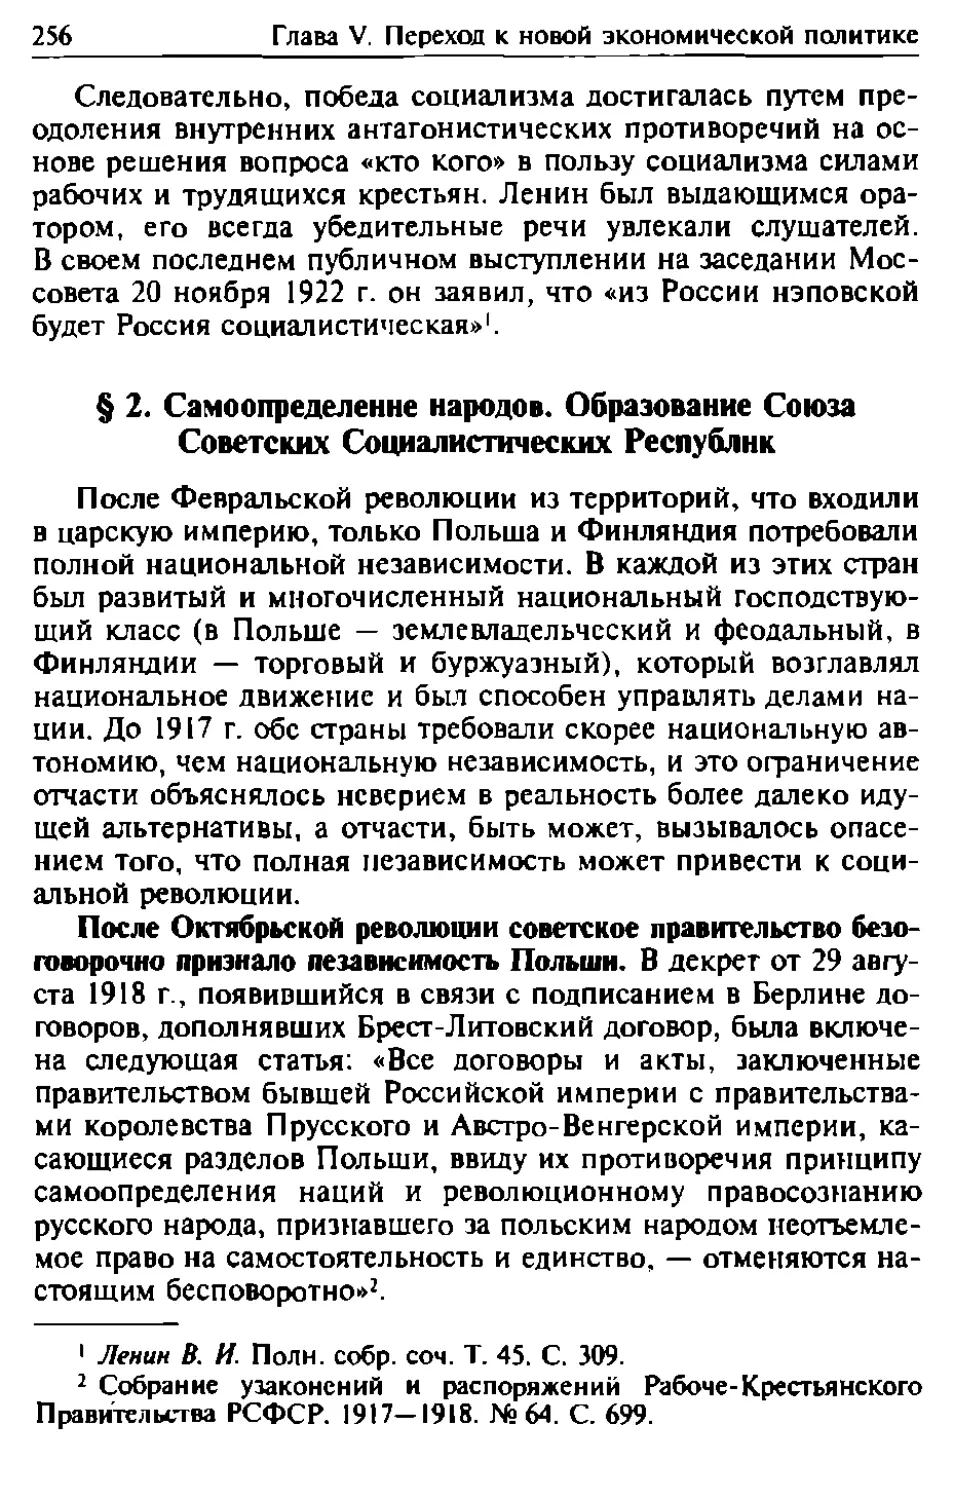 § 2. Самоопределение народов. Образование Союза Советских Социалистических Республик